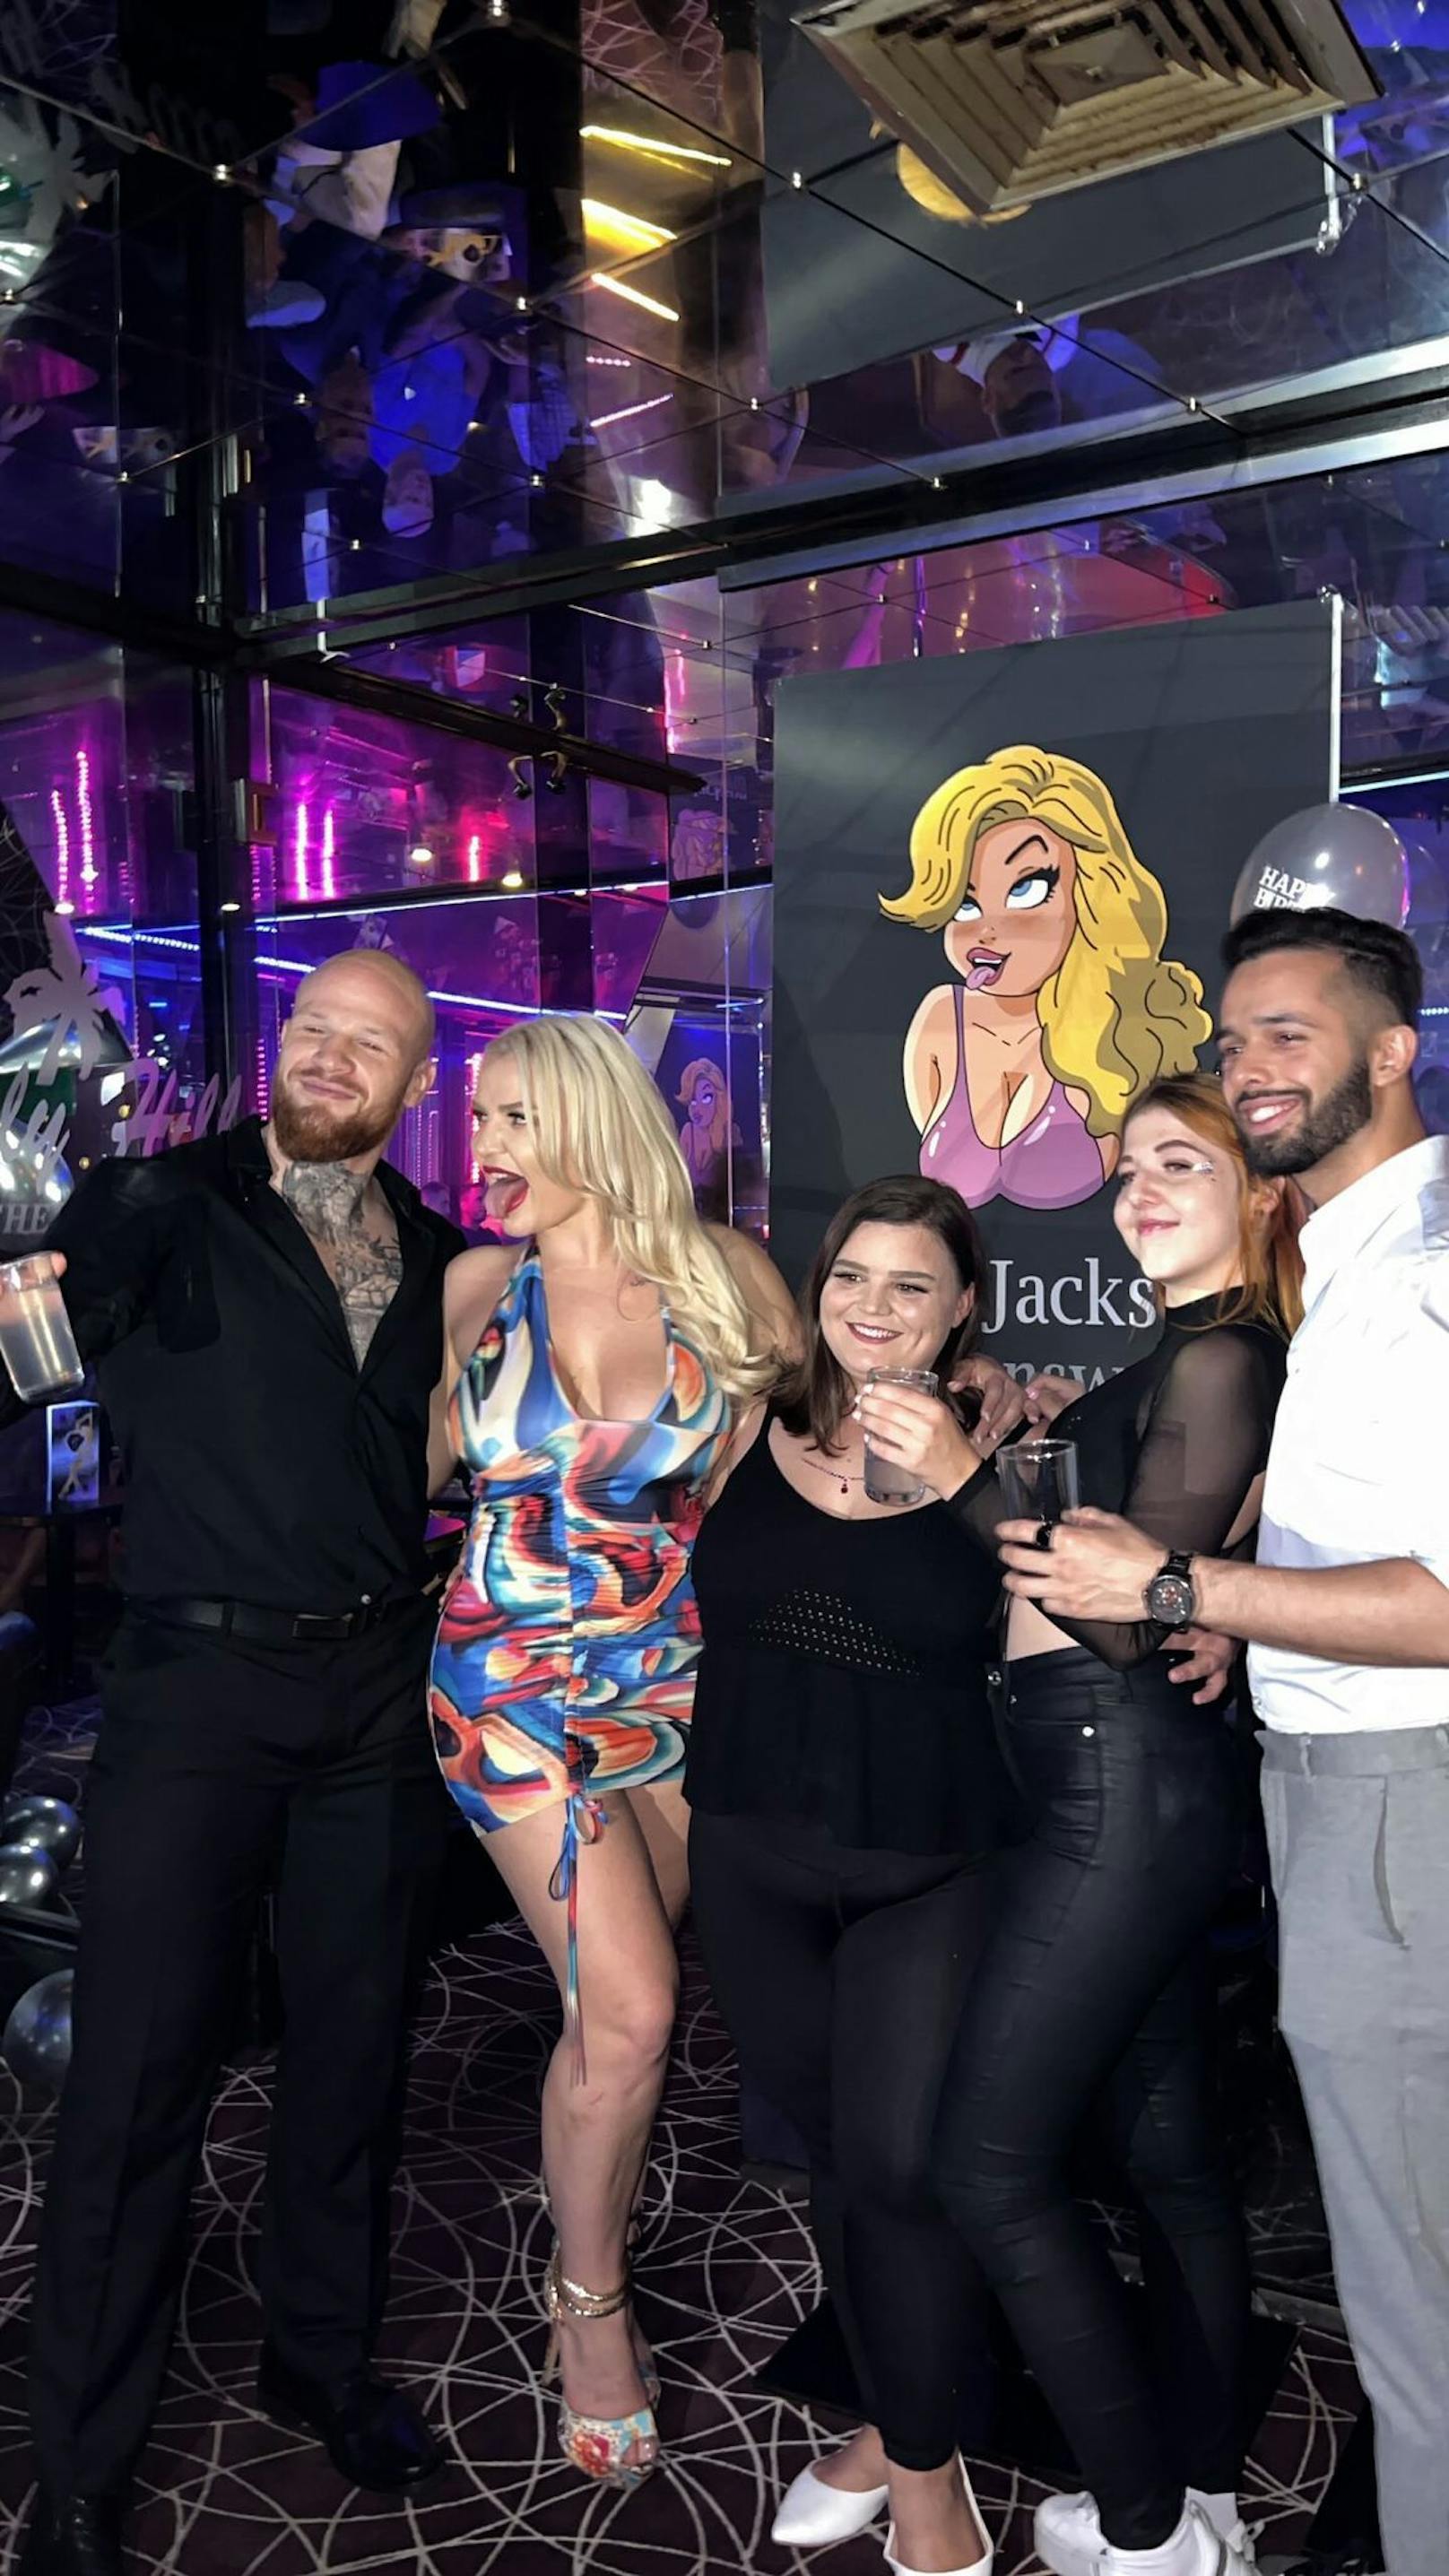 Erotik-Model und Porno-Darstellerin "Miss Jackson" feierte am 13. Oktober ihren 28. Geburtstag in einem Stripclub in der Bundeshauptstadt.